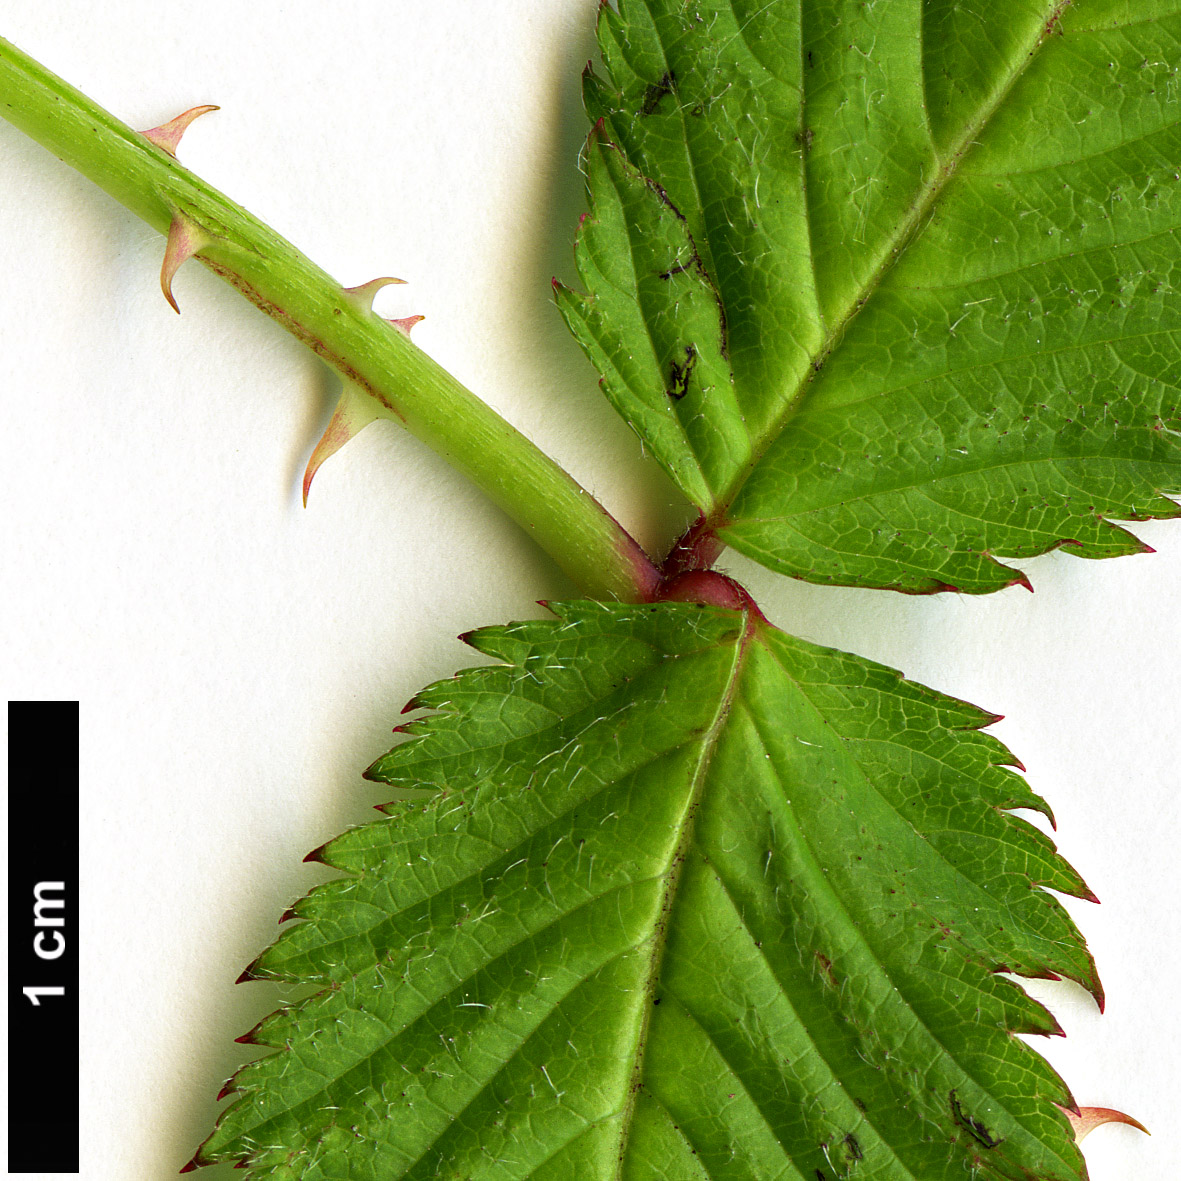 High resolution image: Family: Rosaceae - Genus: Rubus - Taxon: illecebrosus